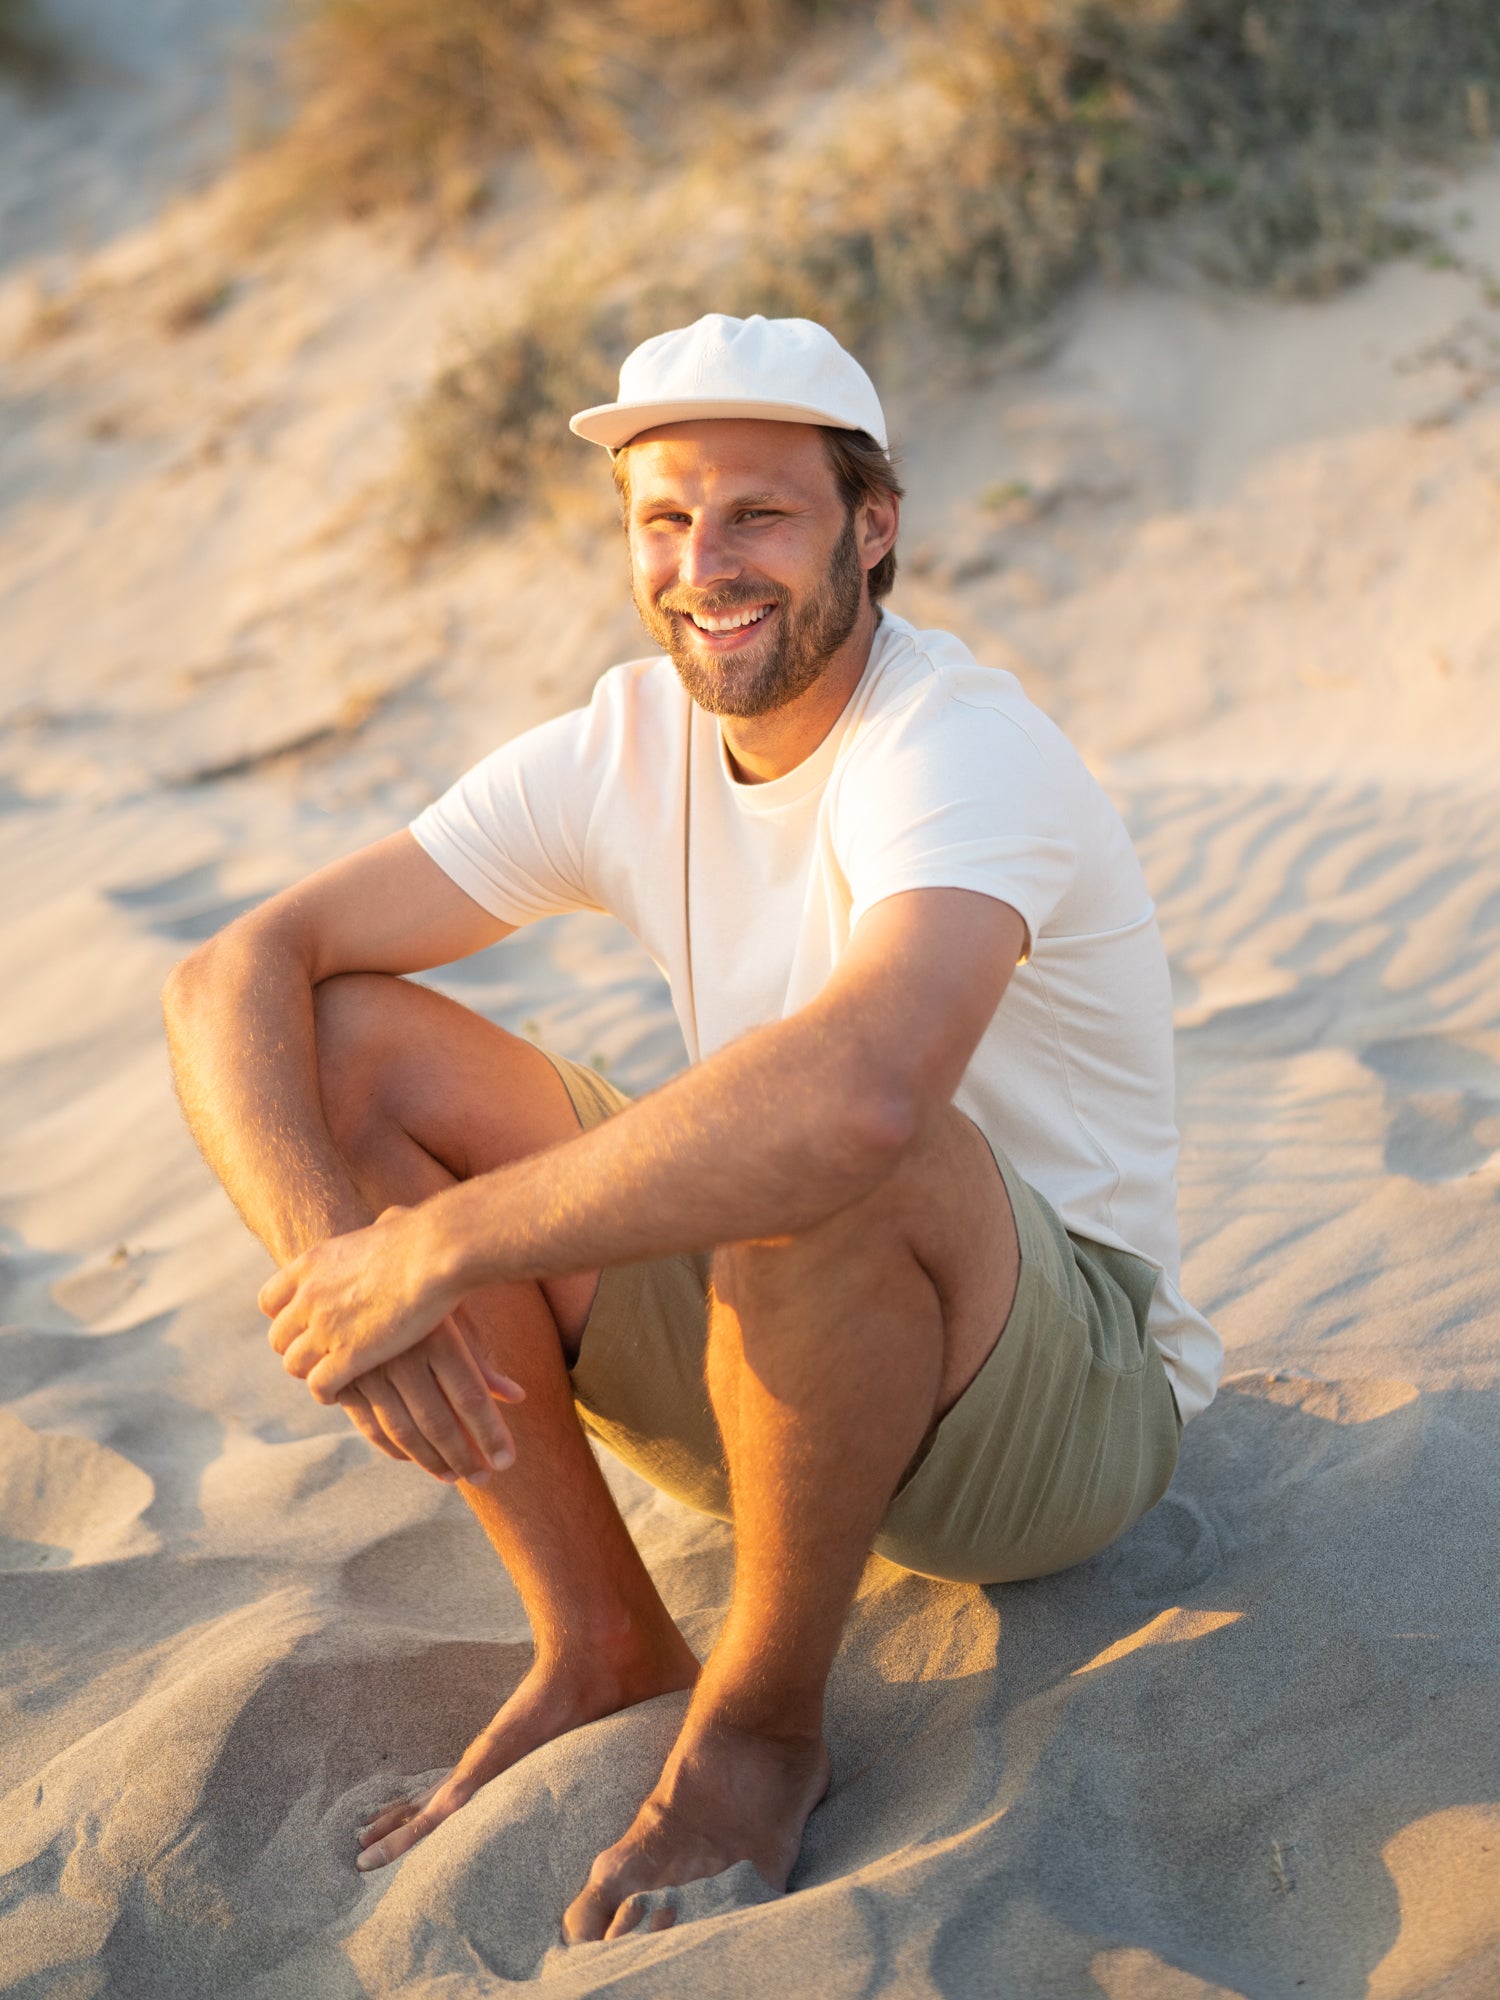 Egal ob am Strand oder in der Stadt: eine luftige Leinenshorts kombiniert mit T-Shirt und Cap ist optimal für heiße Sommertage.